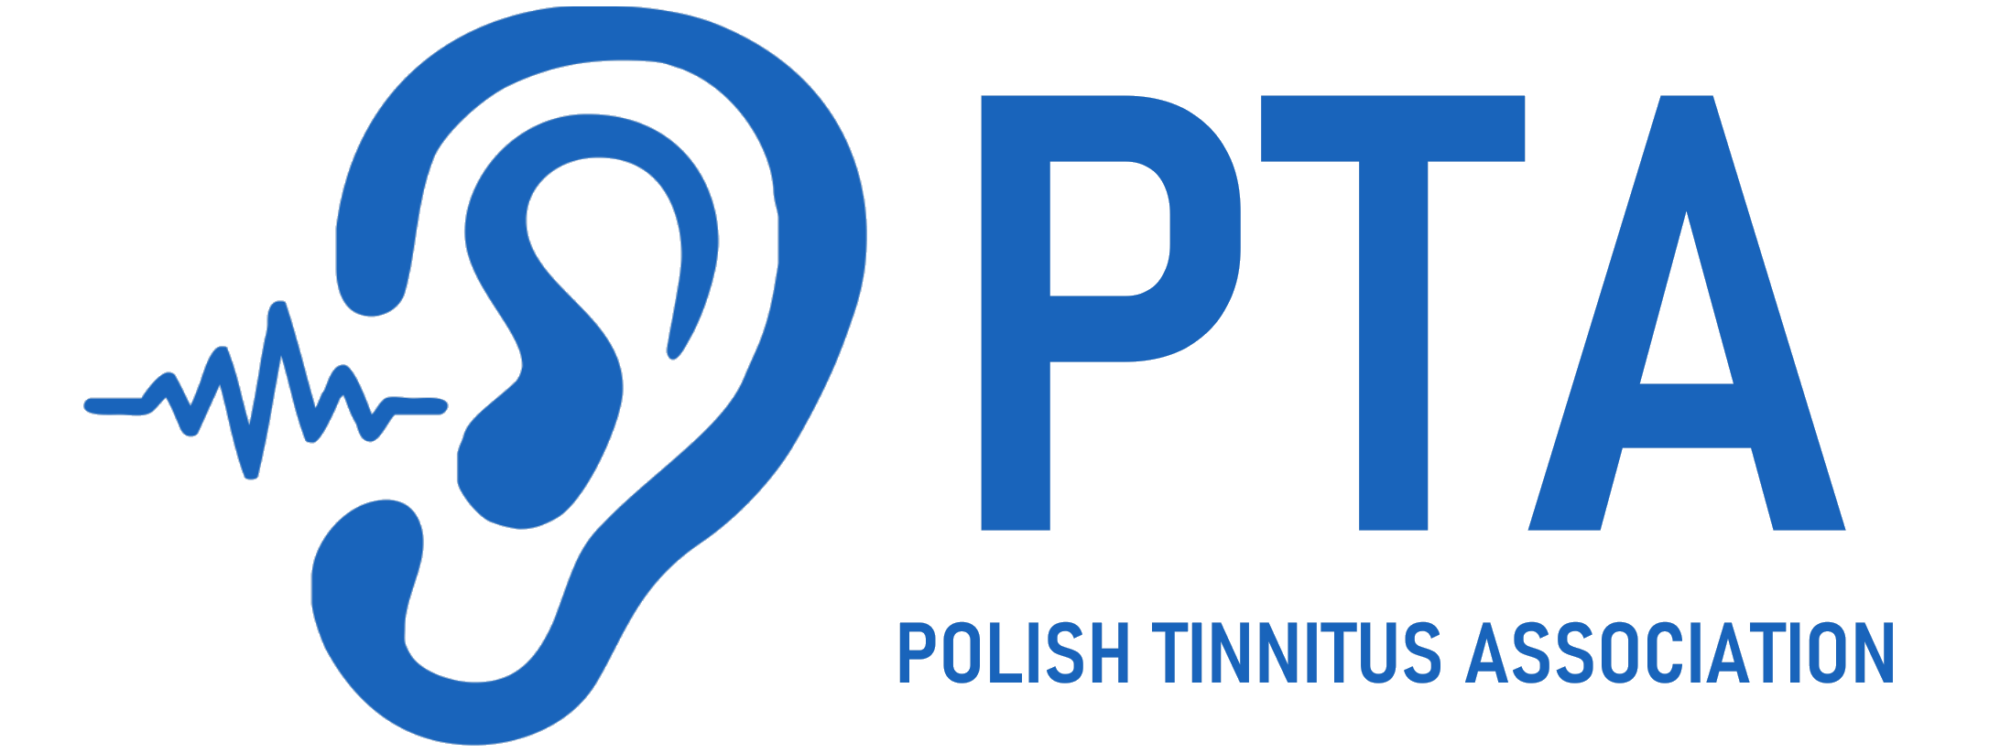 Polish Tinnitus Association